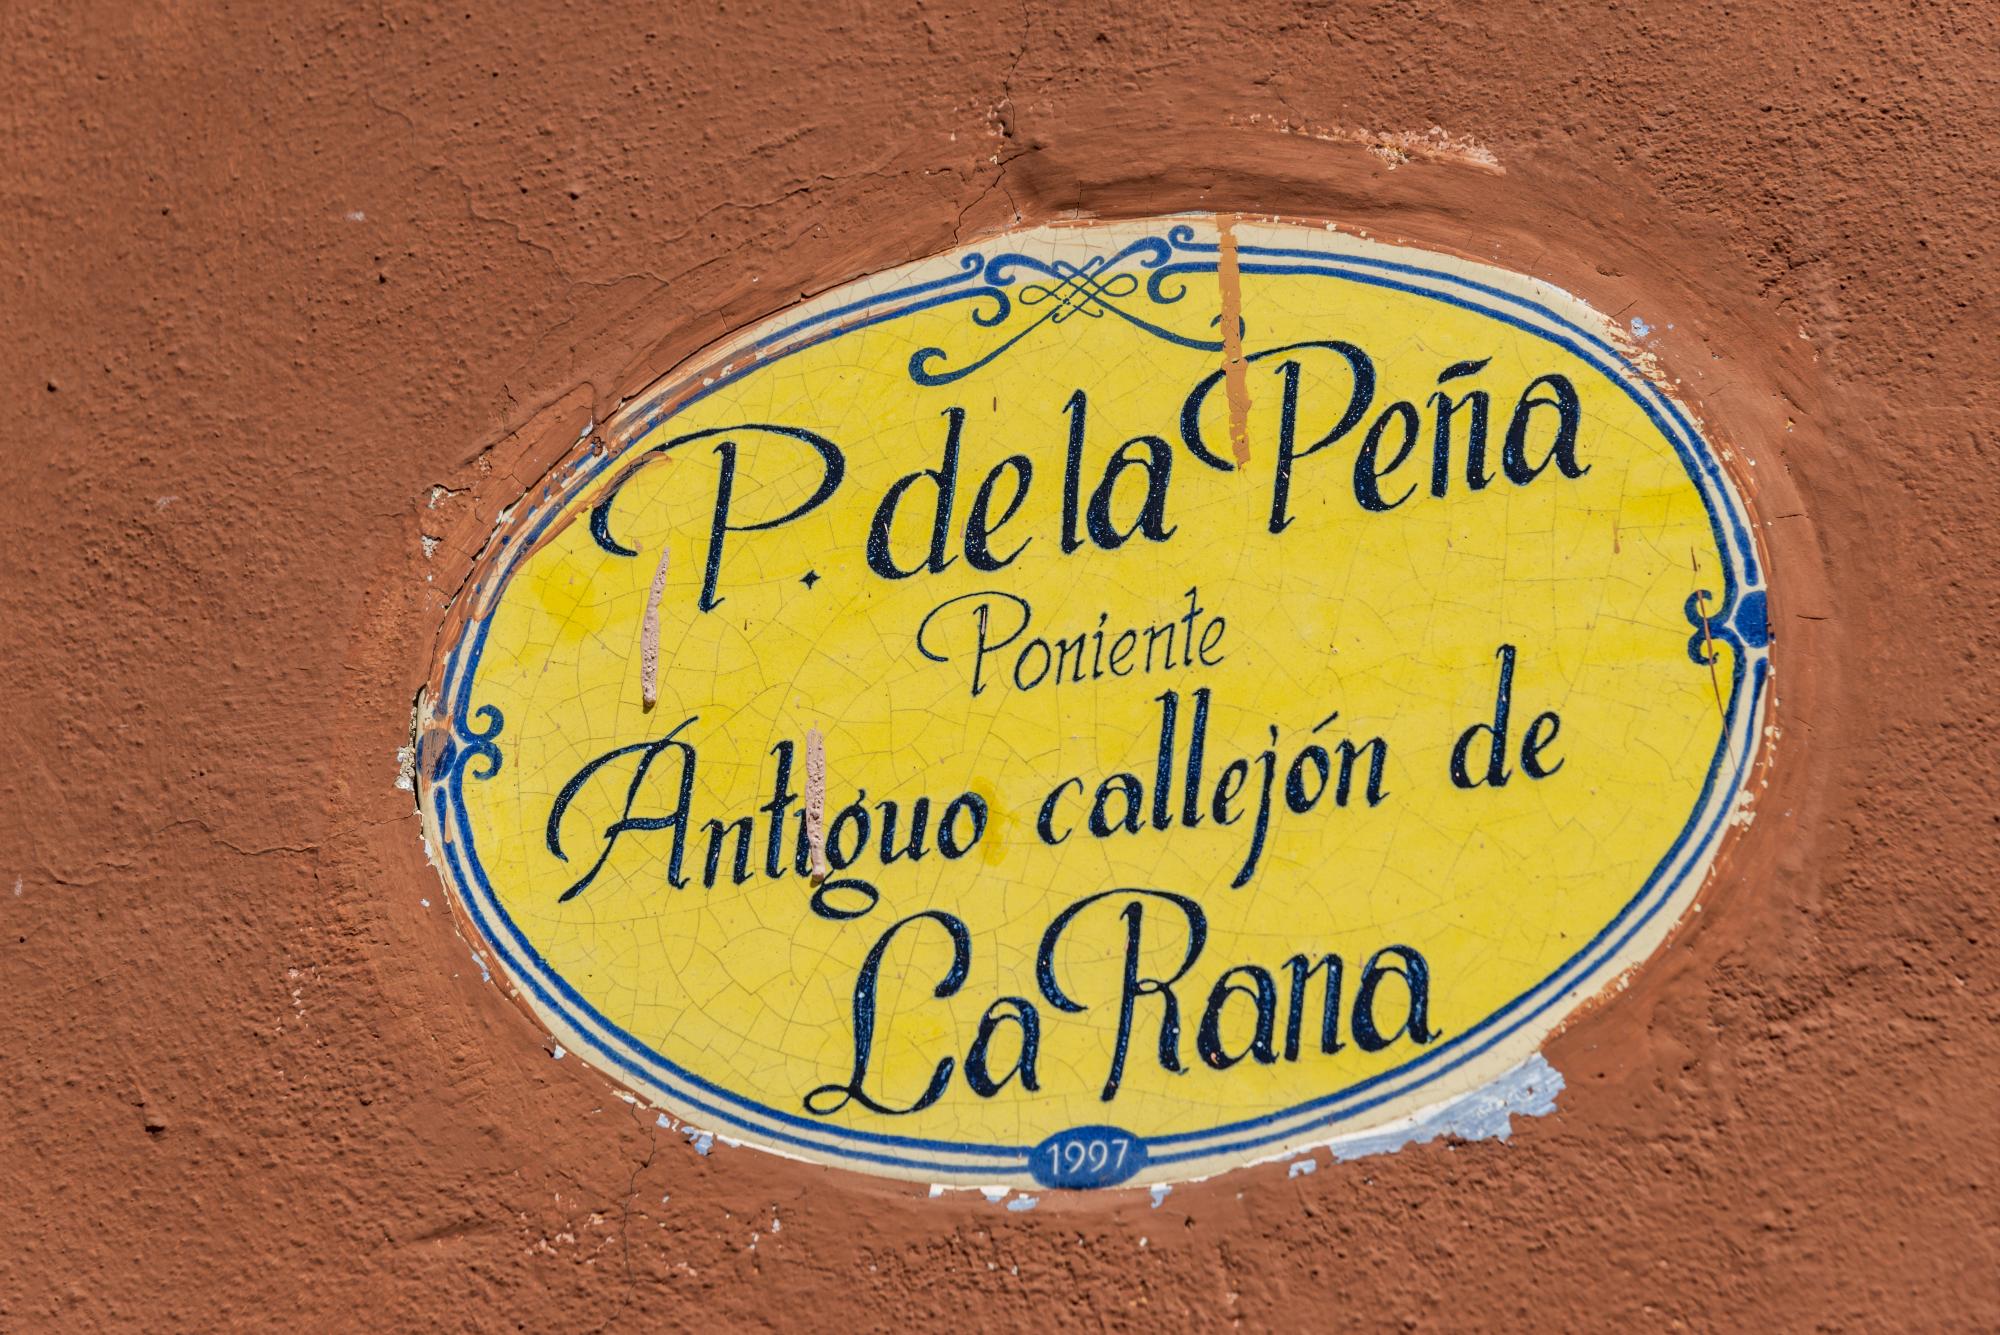 $!Anteriormente la calle era conocida como Callejón de La Rana.